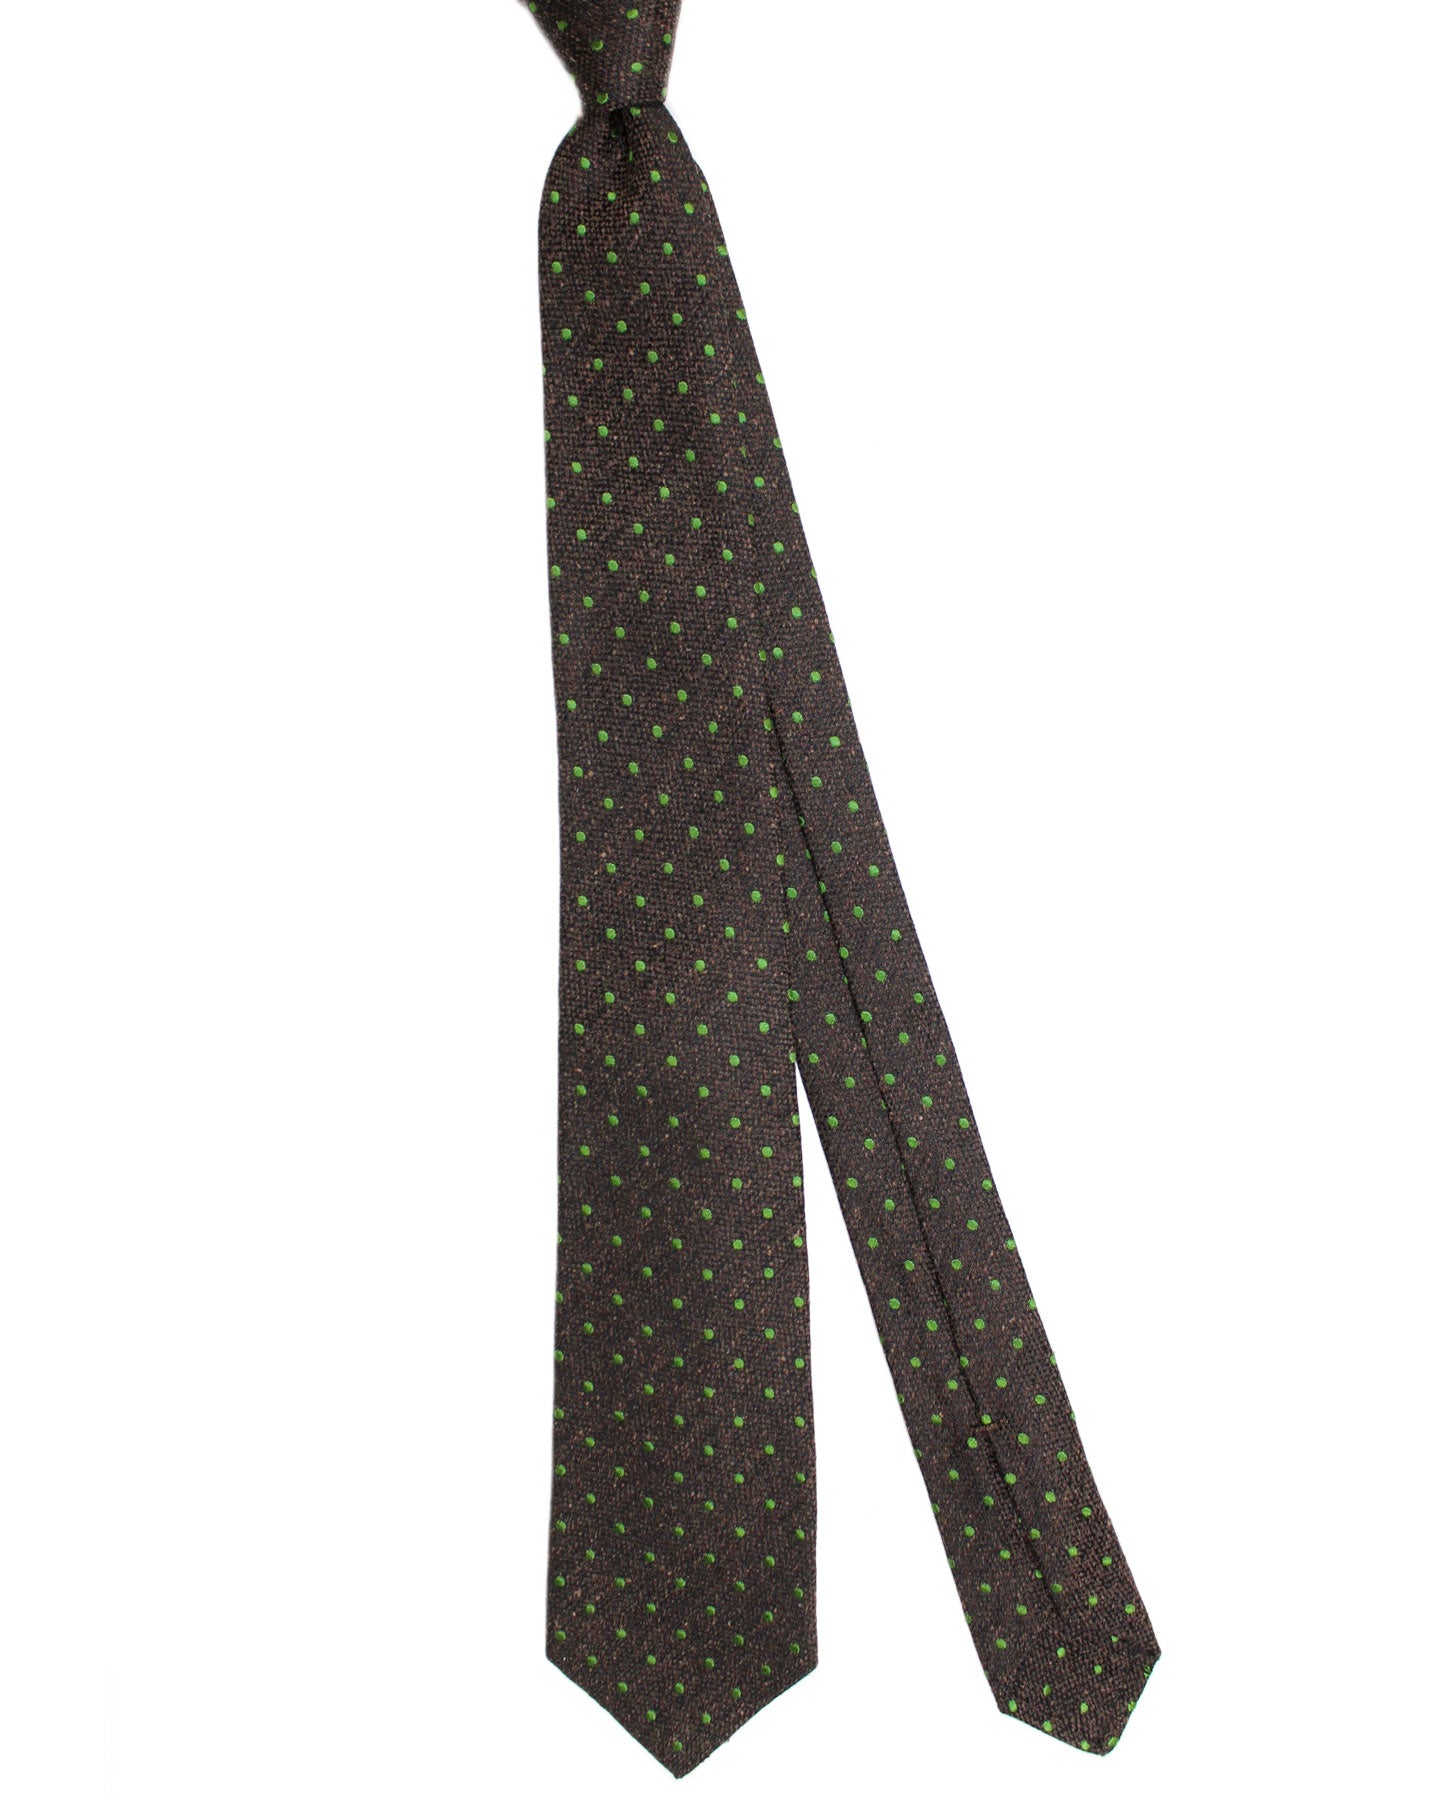 Kiton Silk Wool Tie Brown Green Dots Design - Sevenfold Necktie